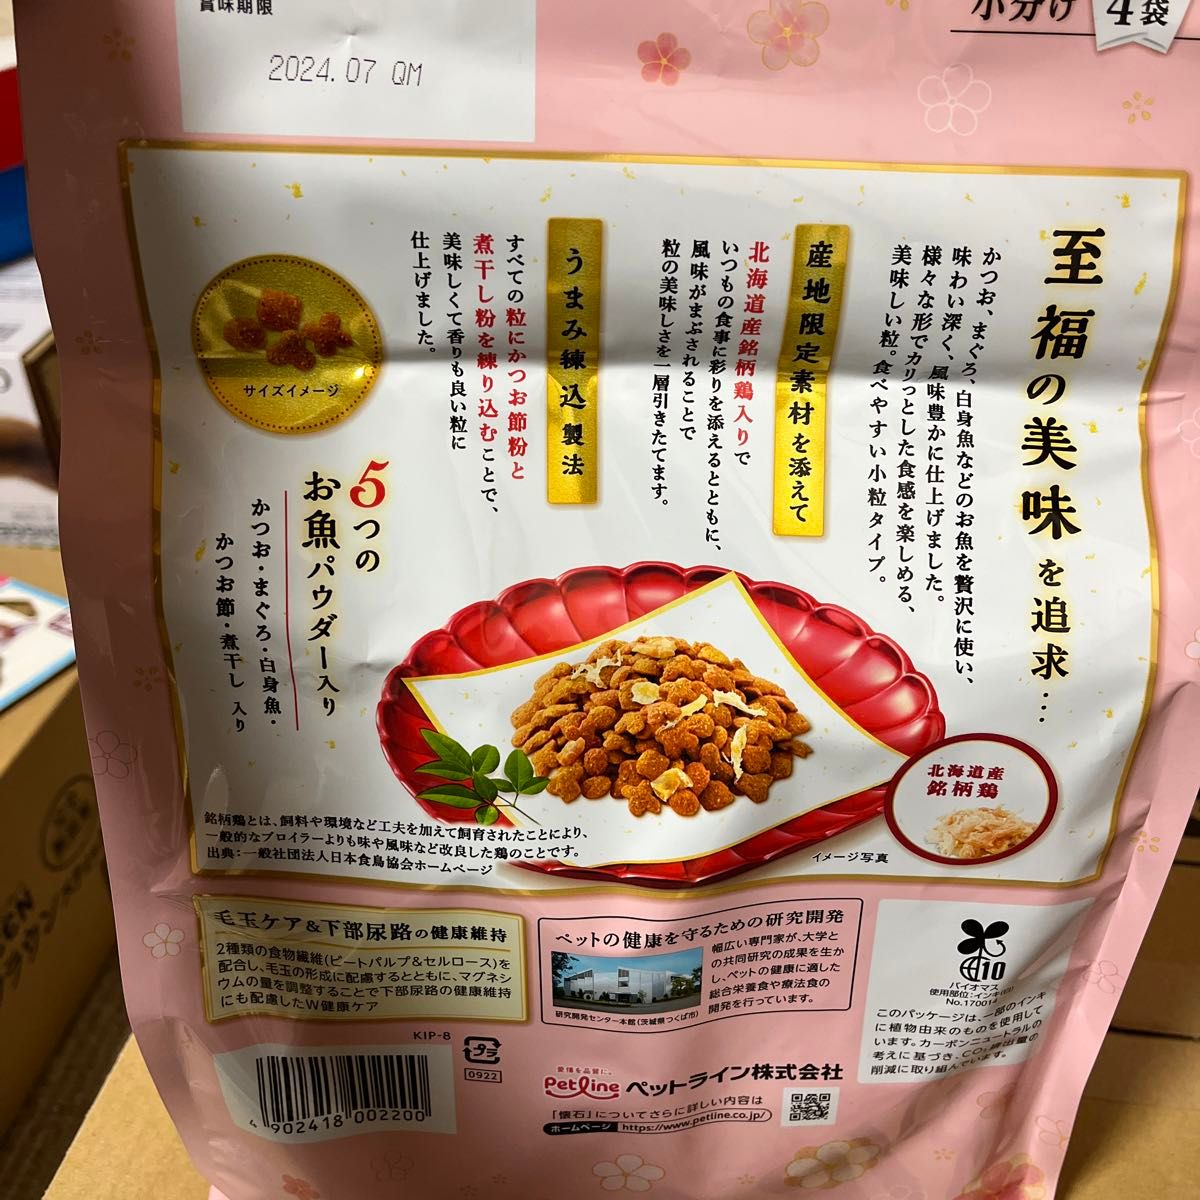 【お得な6個セット】ペットライン 懐石ippin 北海道産銘柄鶏添え 1.2kg ☆